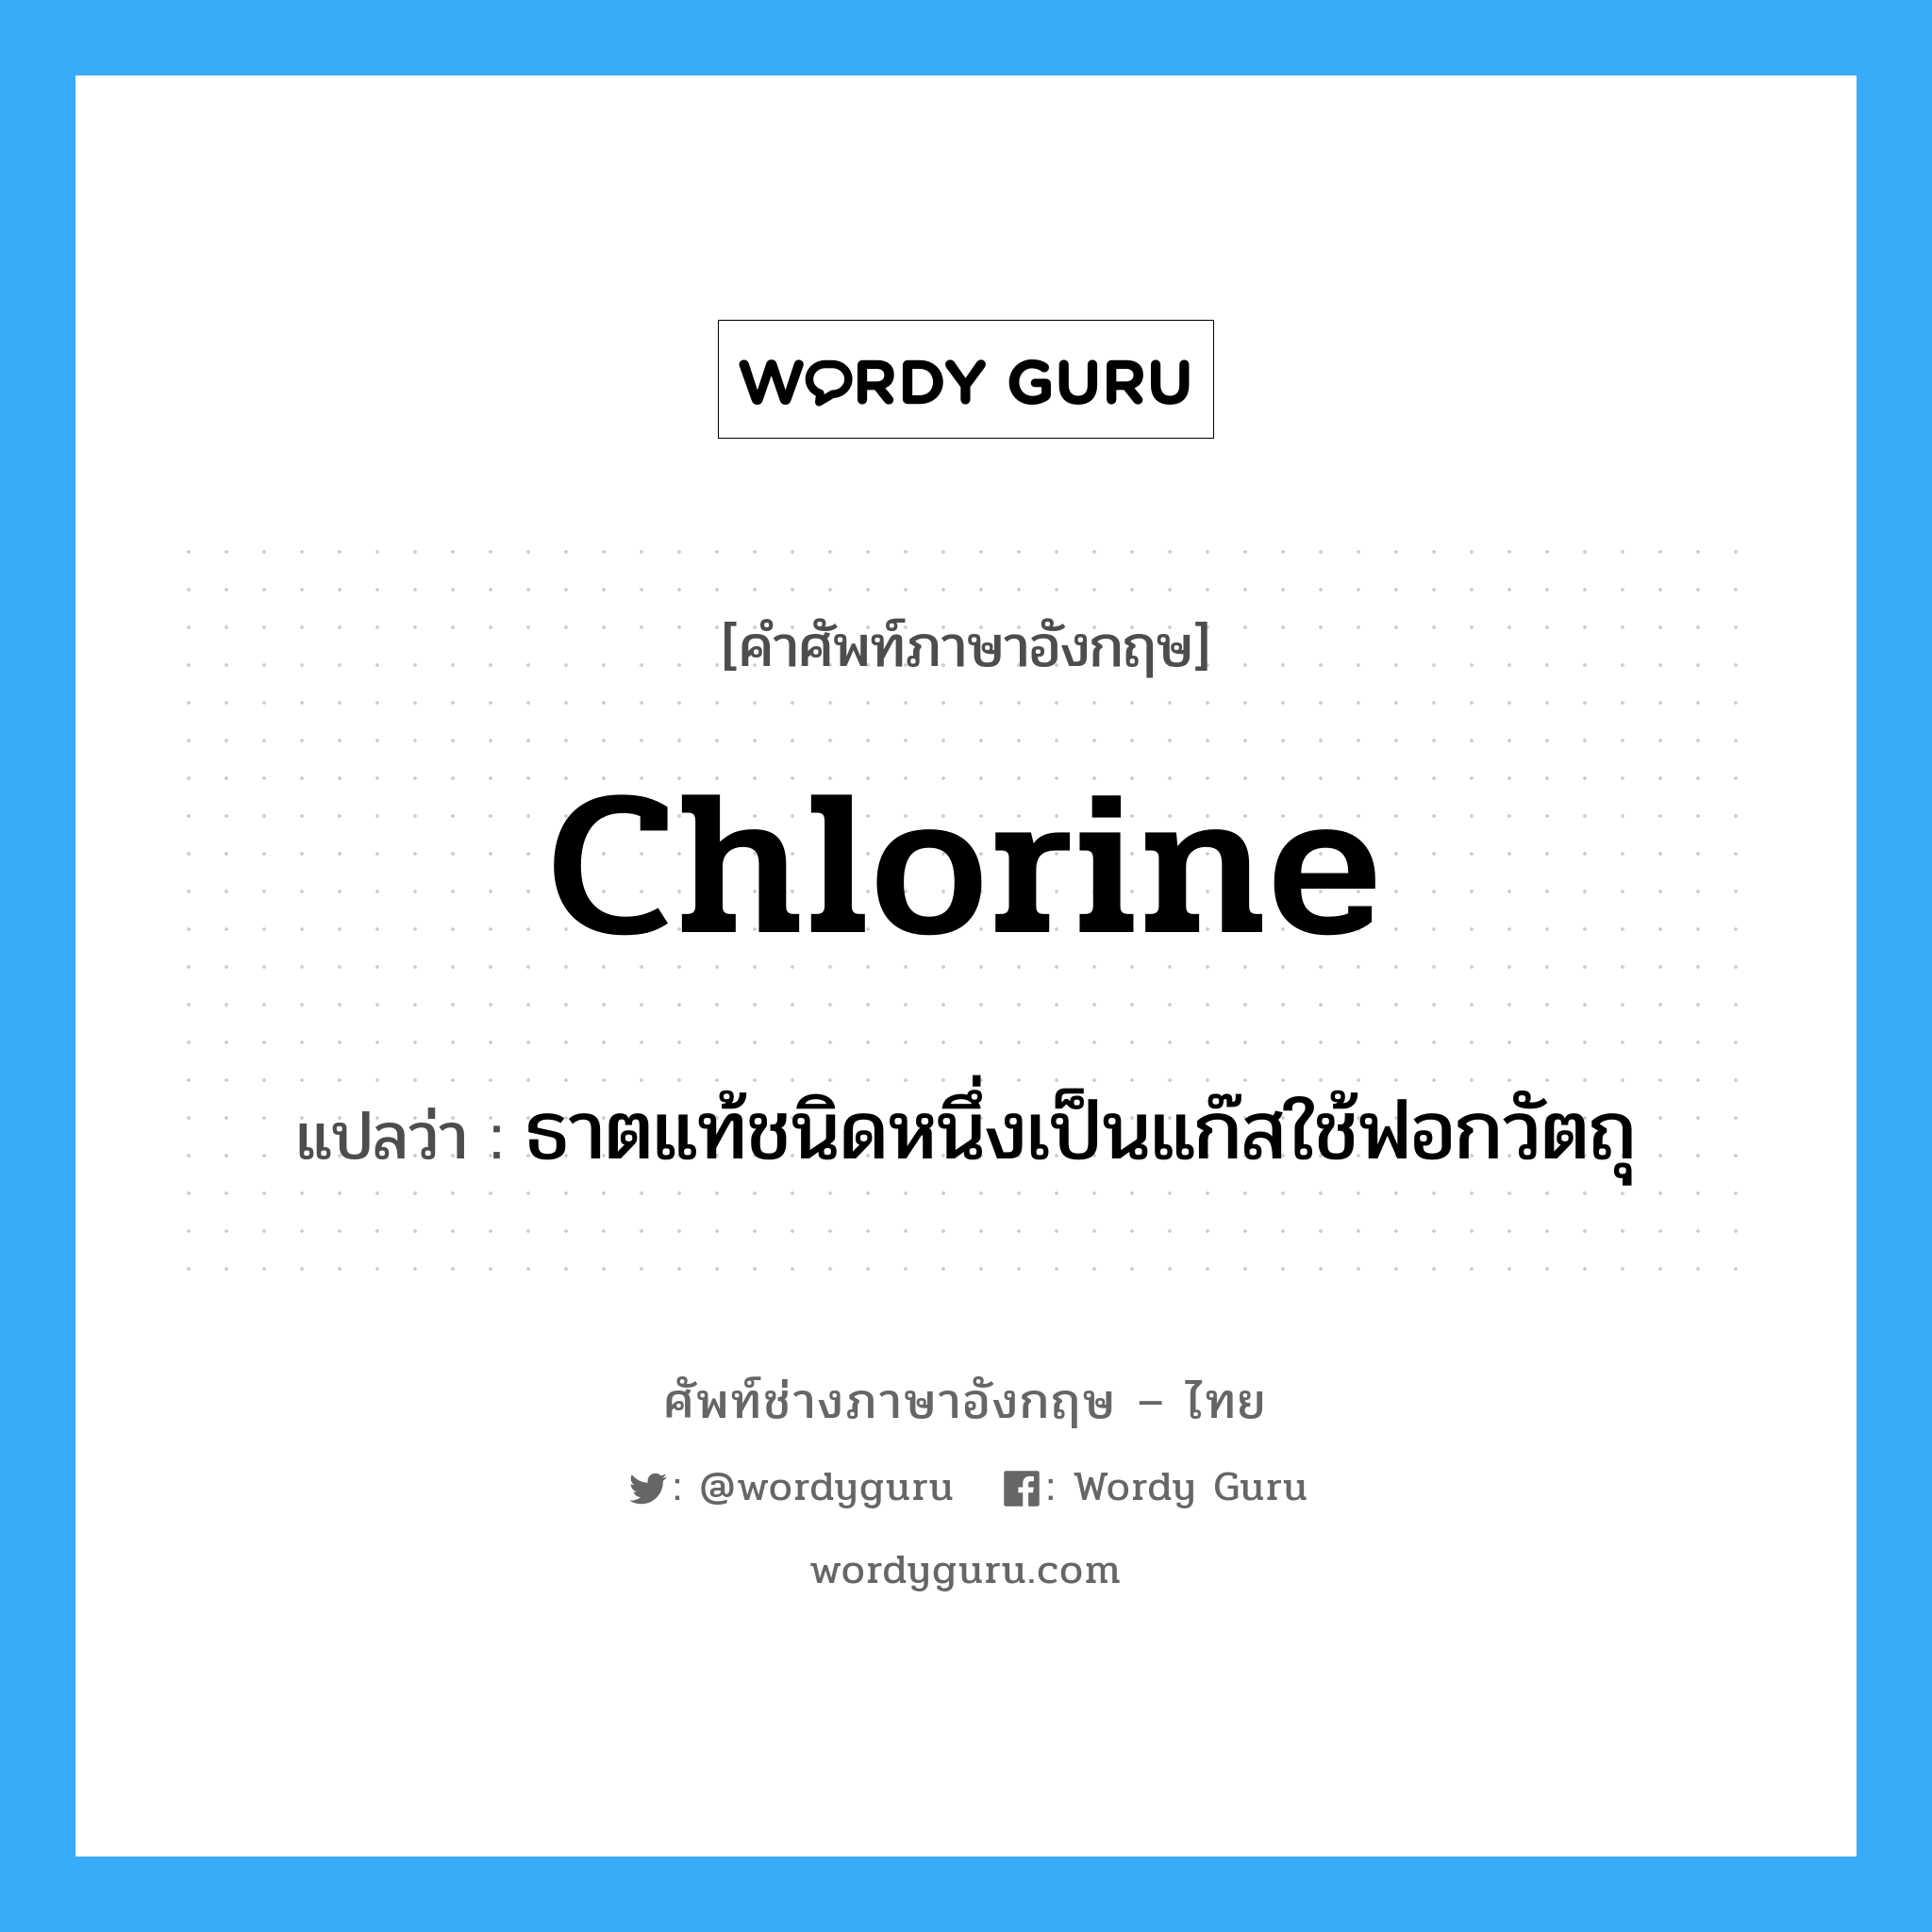 chlorine แปลว่า?, คำศัพท์ช่างภาษาอังกฤษ - ไทย chlorine คำศัพท์ภาษาอังกฤษ chlorine แปลว่า ธาตแท้ชนิดหนึ่งเป็นแก๊สใช้ฟอกวัตถุ